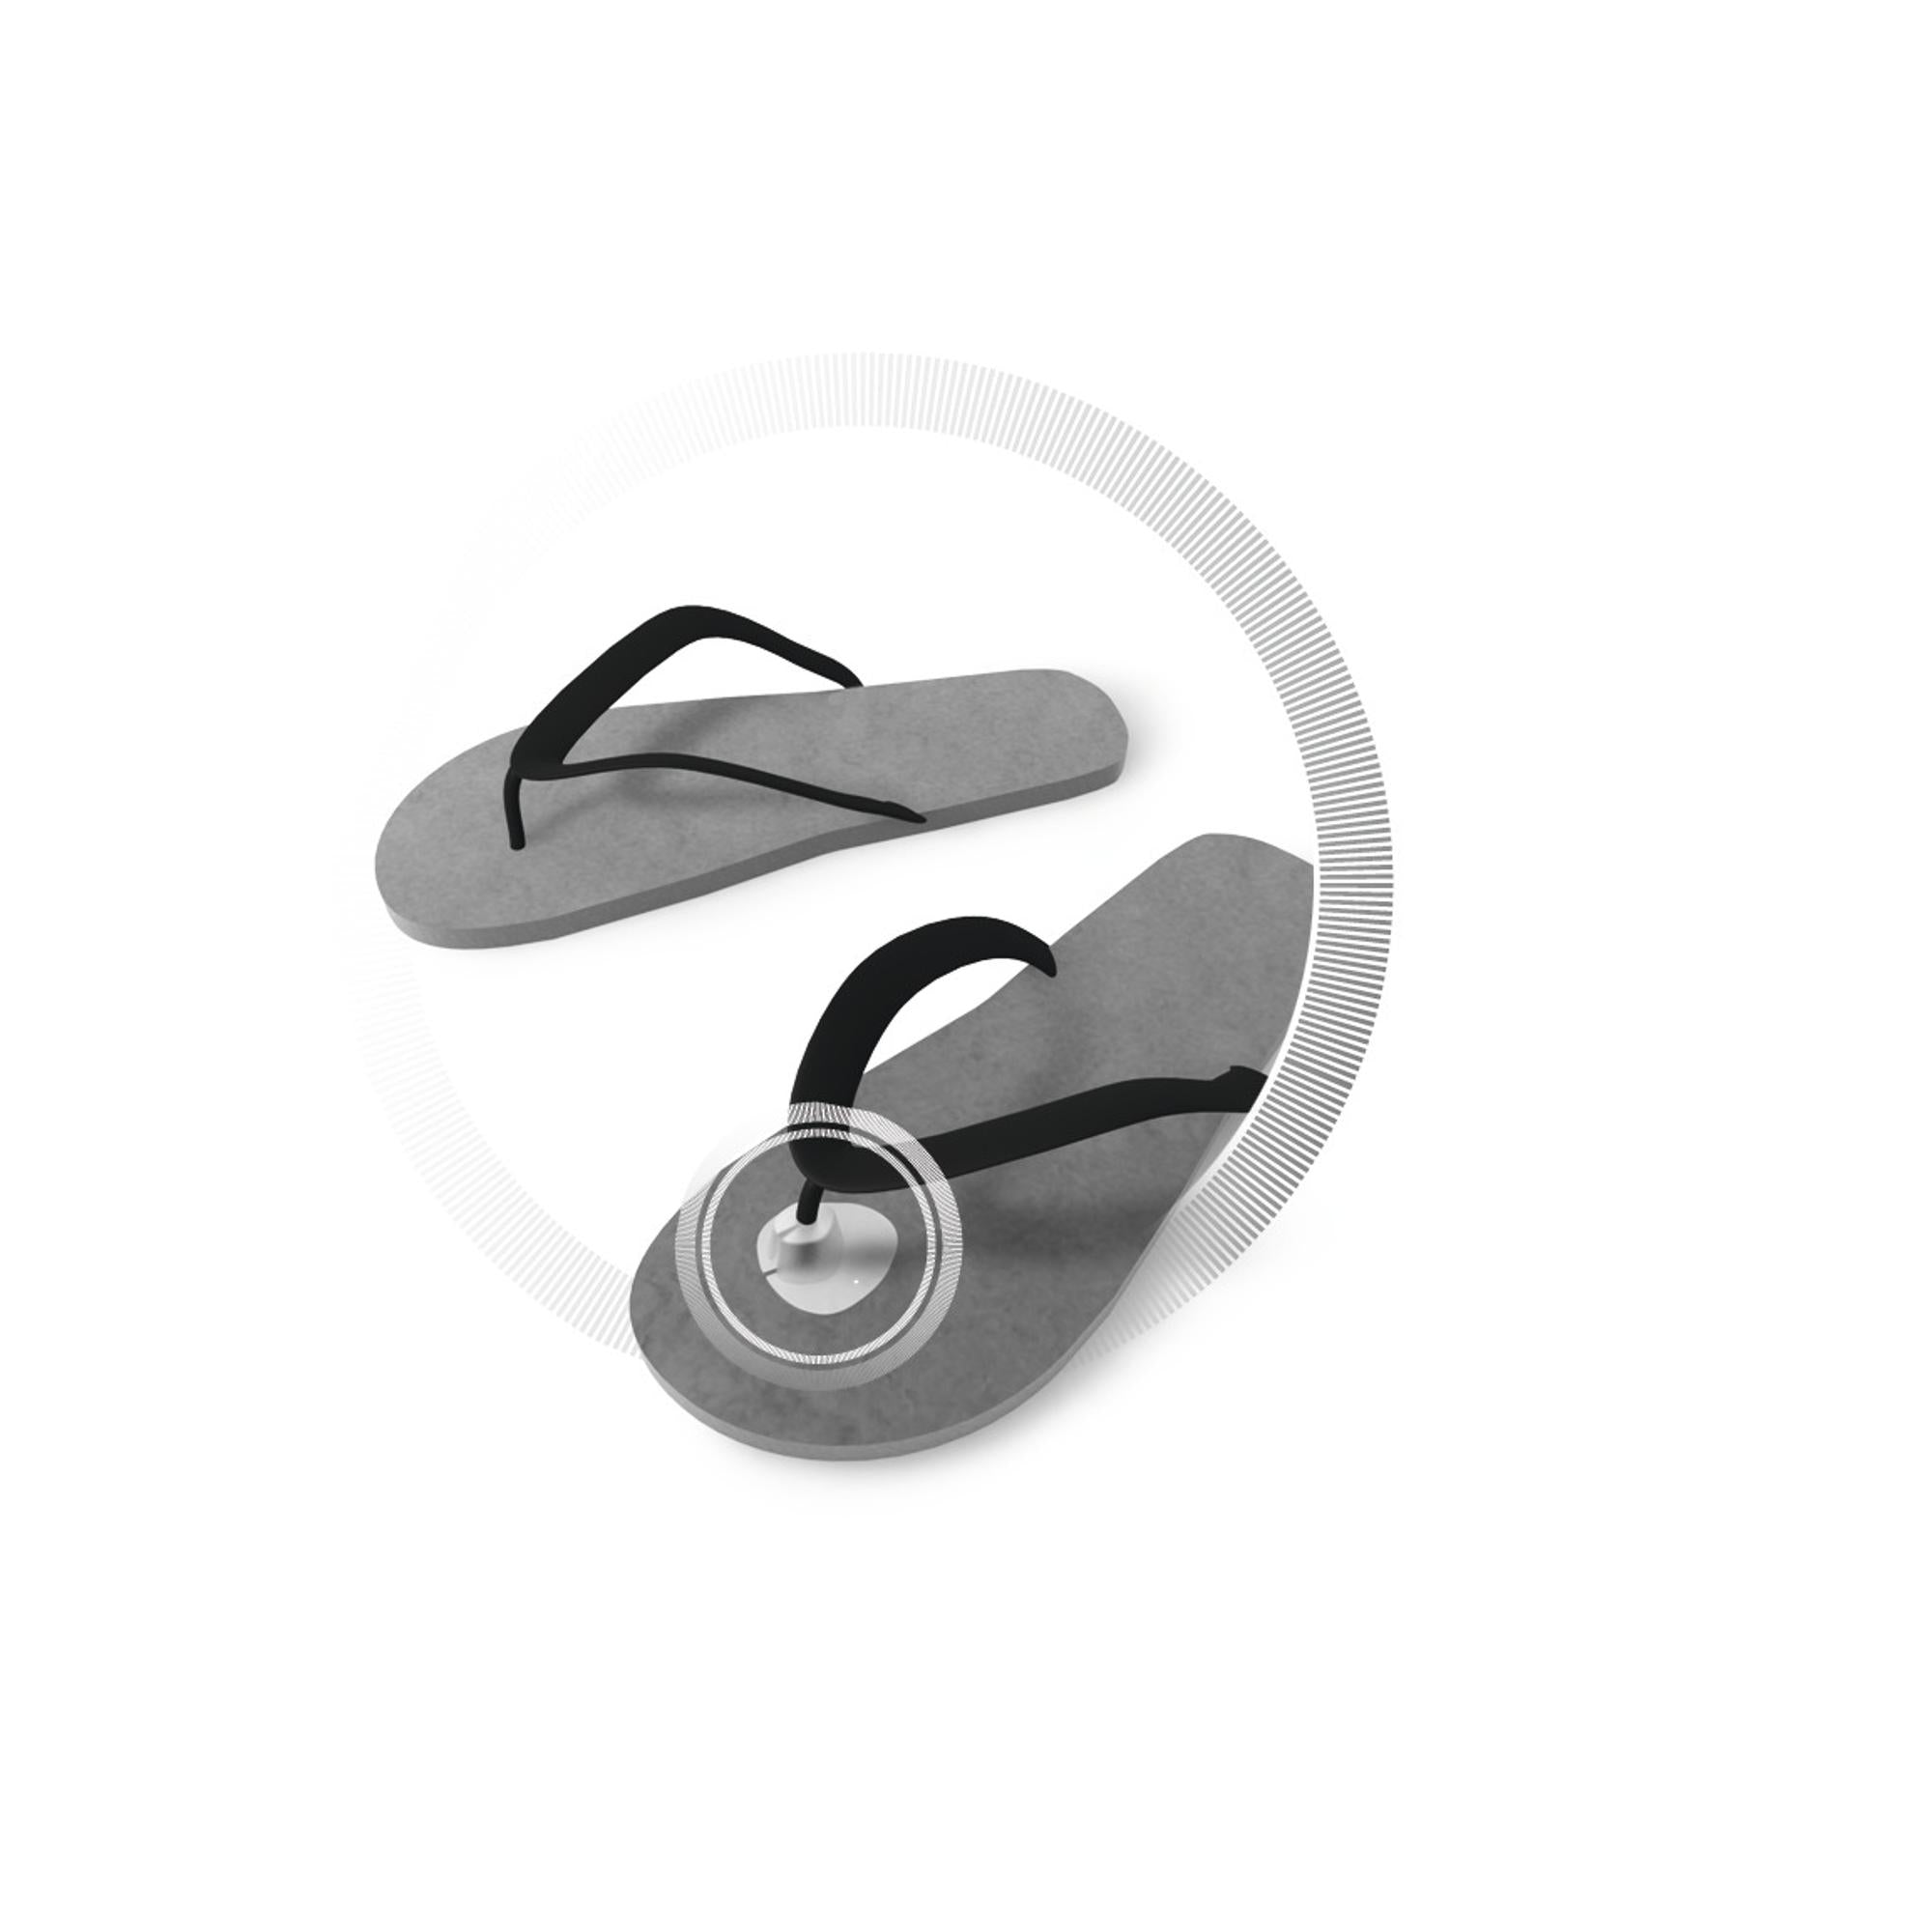 Protection pour chaussures ouverte - Evite les douleurs entre les orteils - 1 paire - Ruck